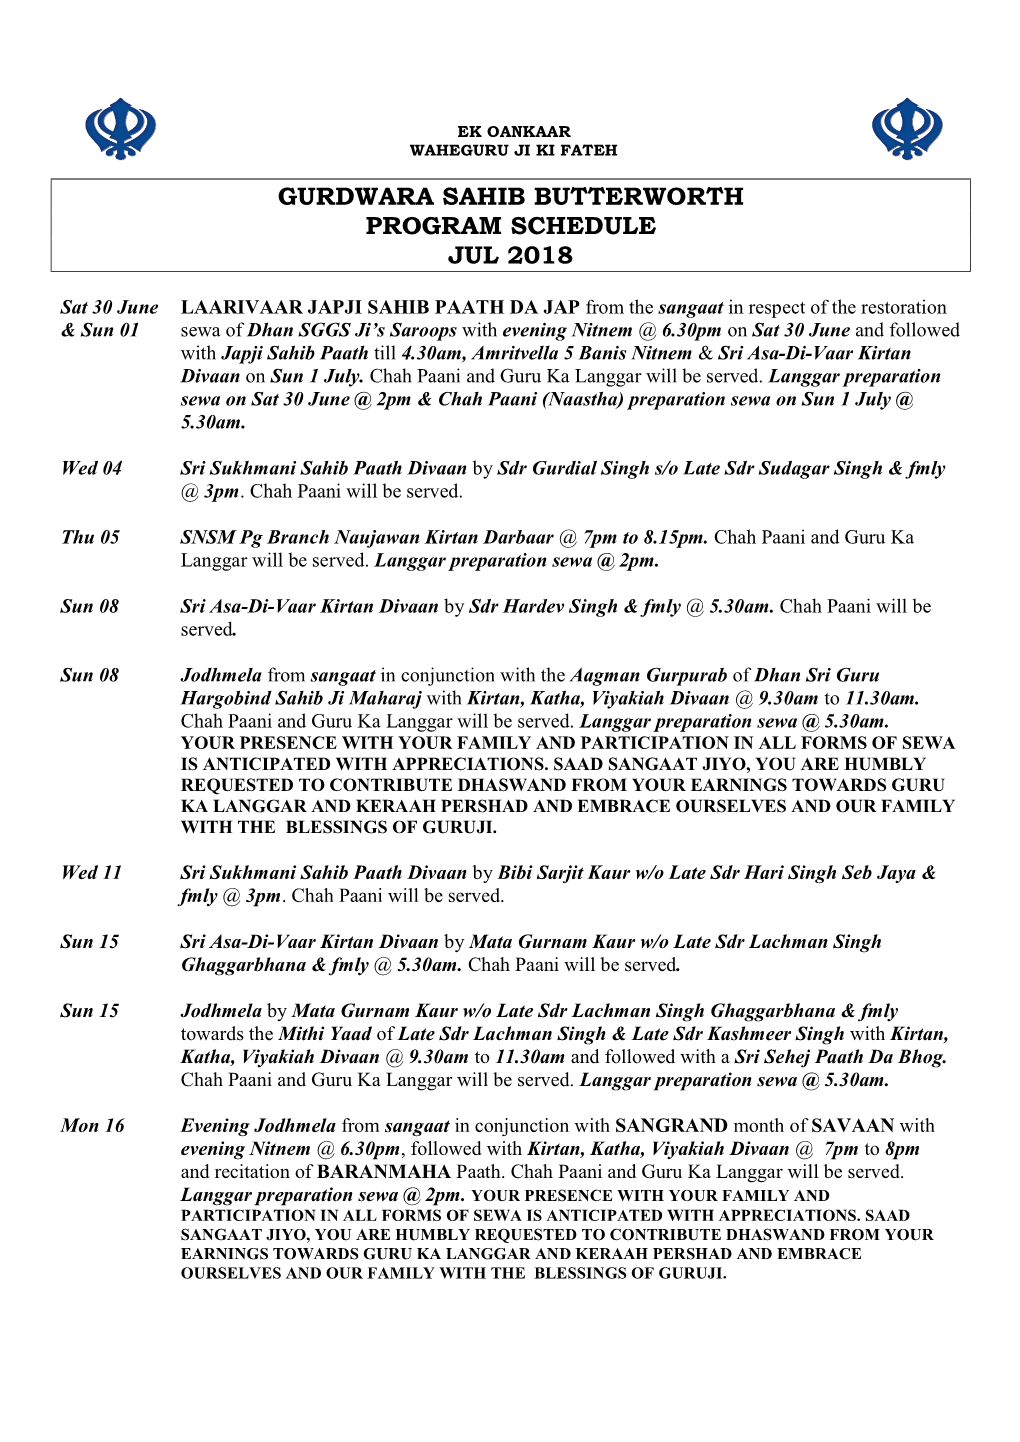 Gurdwara Sahib Butterworth Program Schedule Jul 2018